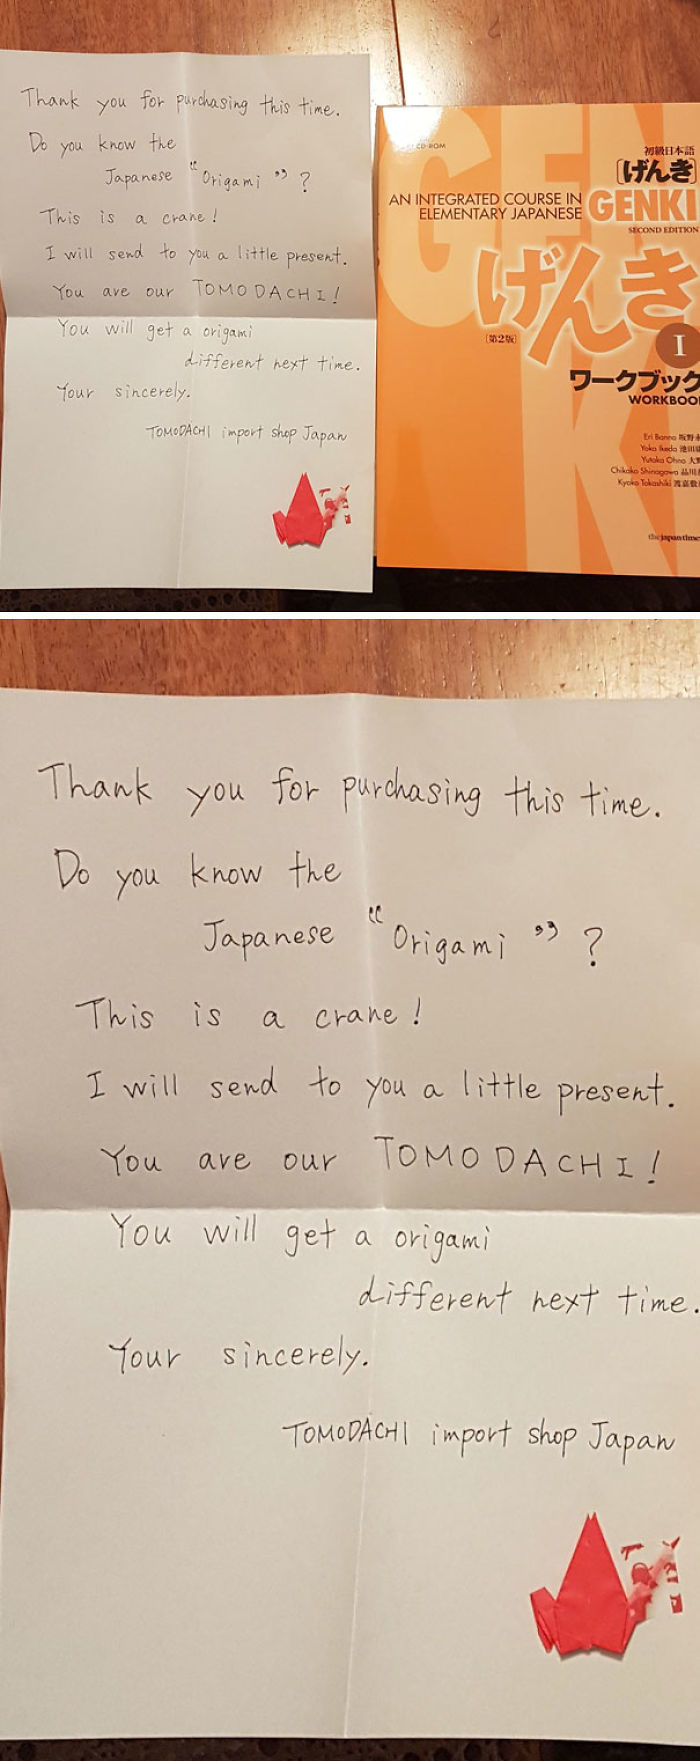 
"Tôi có đặt mua thứ này từ Nhật Bản và bên trong túi giấy gói có kèm một chú hạc giấy cùng lá thư với nội dung như sau: "Cảm ơn bạn vì đã chọn mua món này. Bạn có biết origami của Nhật Bản không? Đây là một chú hạc giấy, và bạn là "tomodachi" của tụi mình! Lần tới, bạn sẽ nhận được một chú hạc giấy khác". Và các ông biết tomodachi nghĩa là gì không? Là "bạn" đấy."